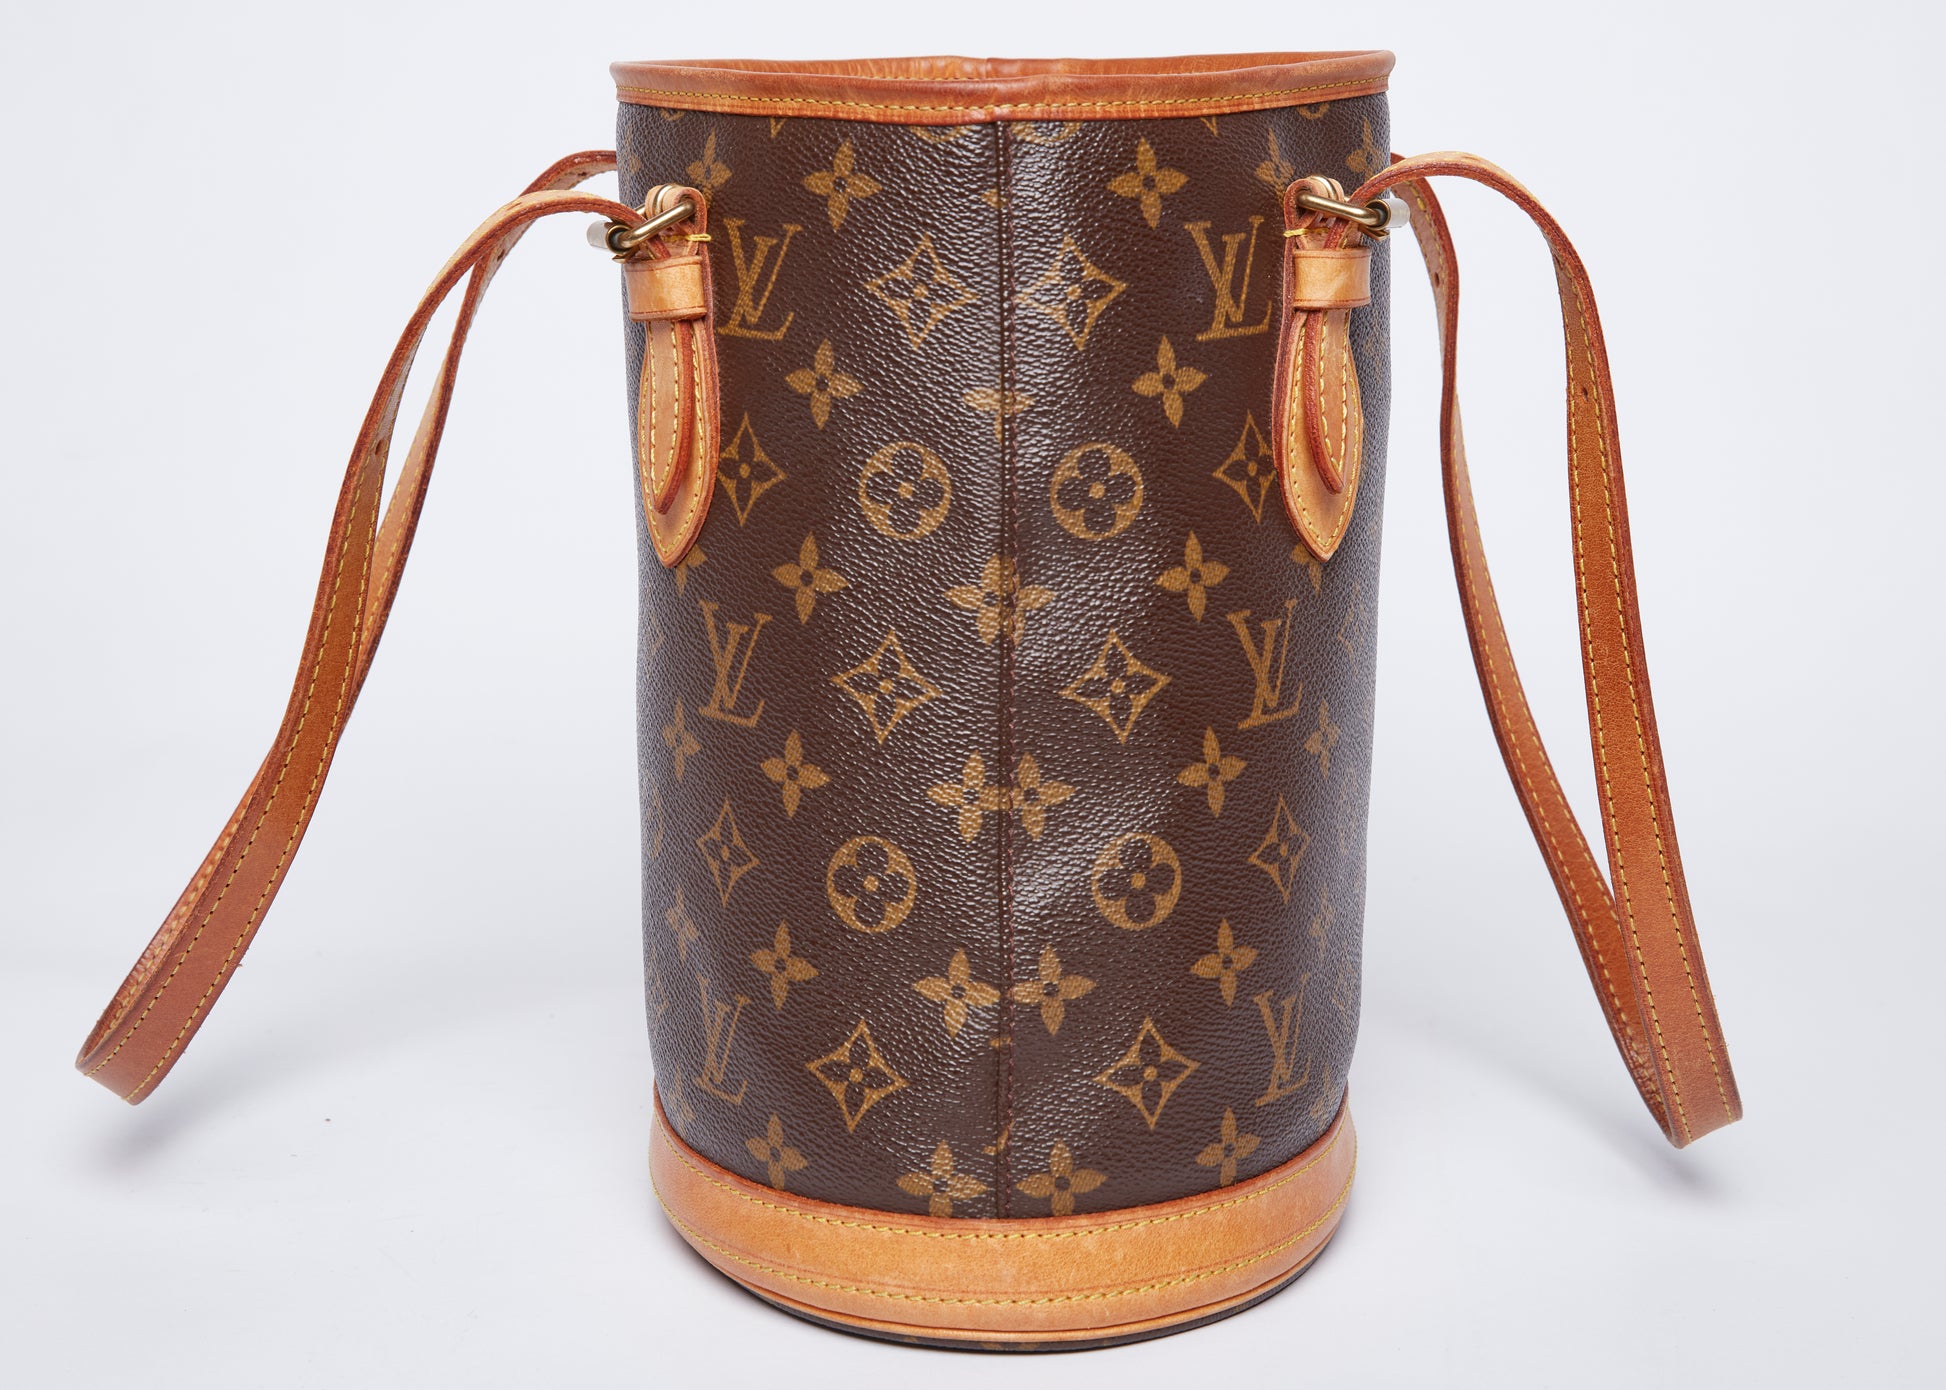 Louis Vuitton Petit Bucket NM Bag